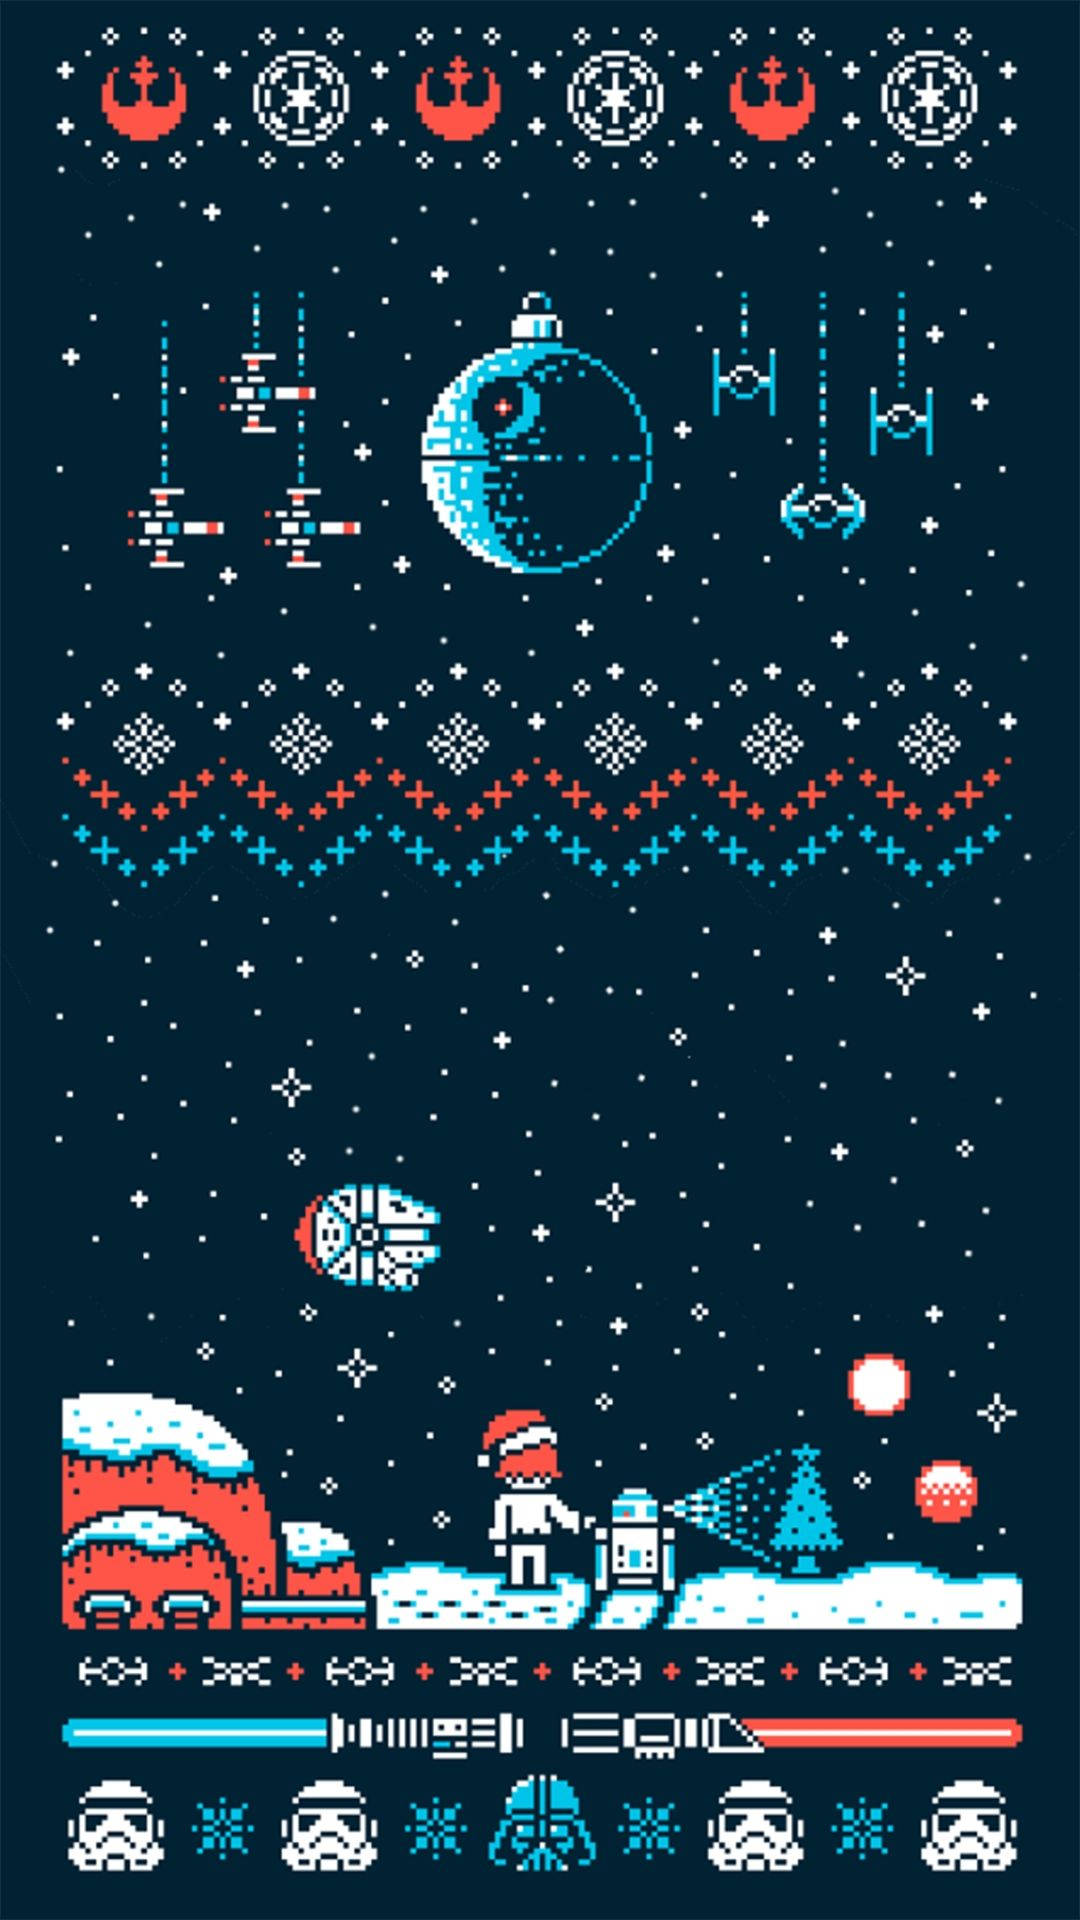 Fejr din intergalaktiske ferie i år med en Star Wars julegaver baggrund! Wallpaper